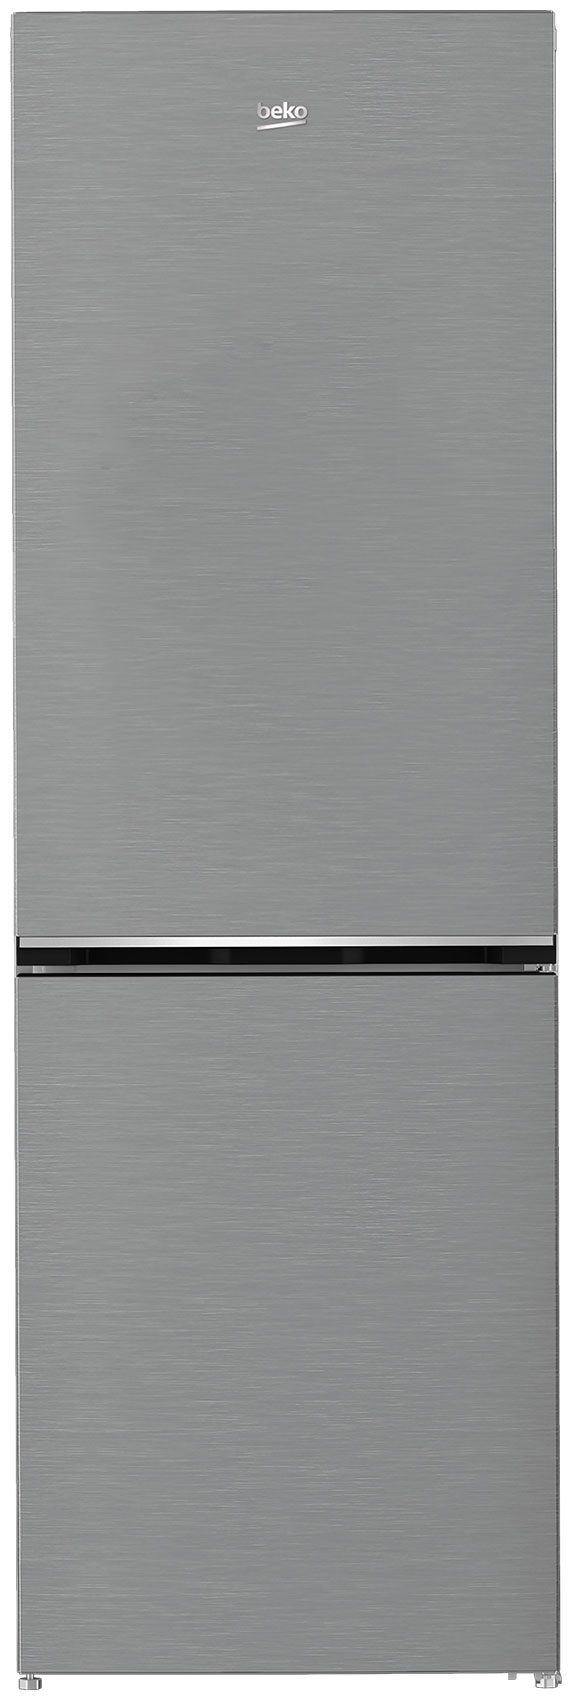 Двухкамерный холодильник Beko B1DRCNK362HX двухкамерный холодильник beko b1drcnk402hx